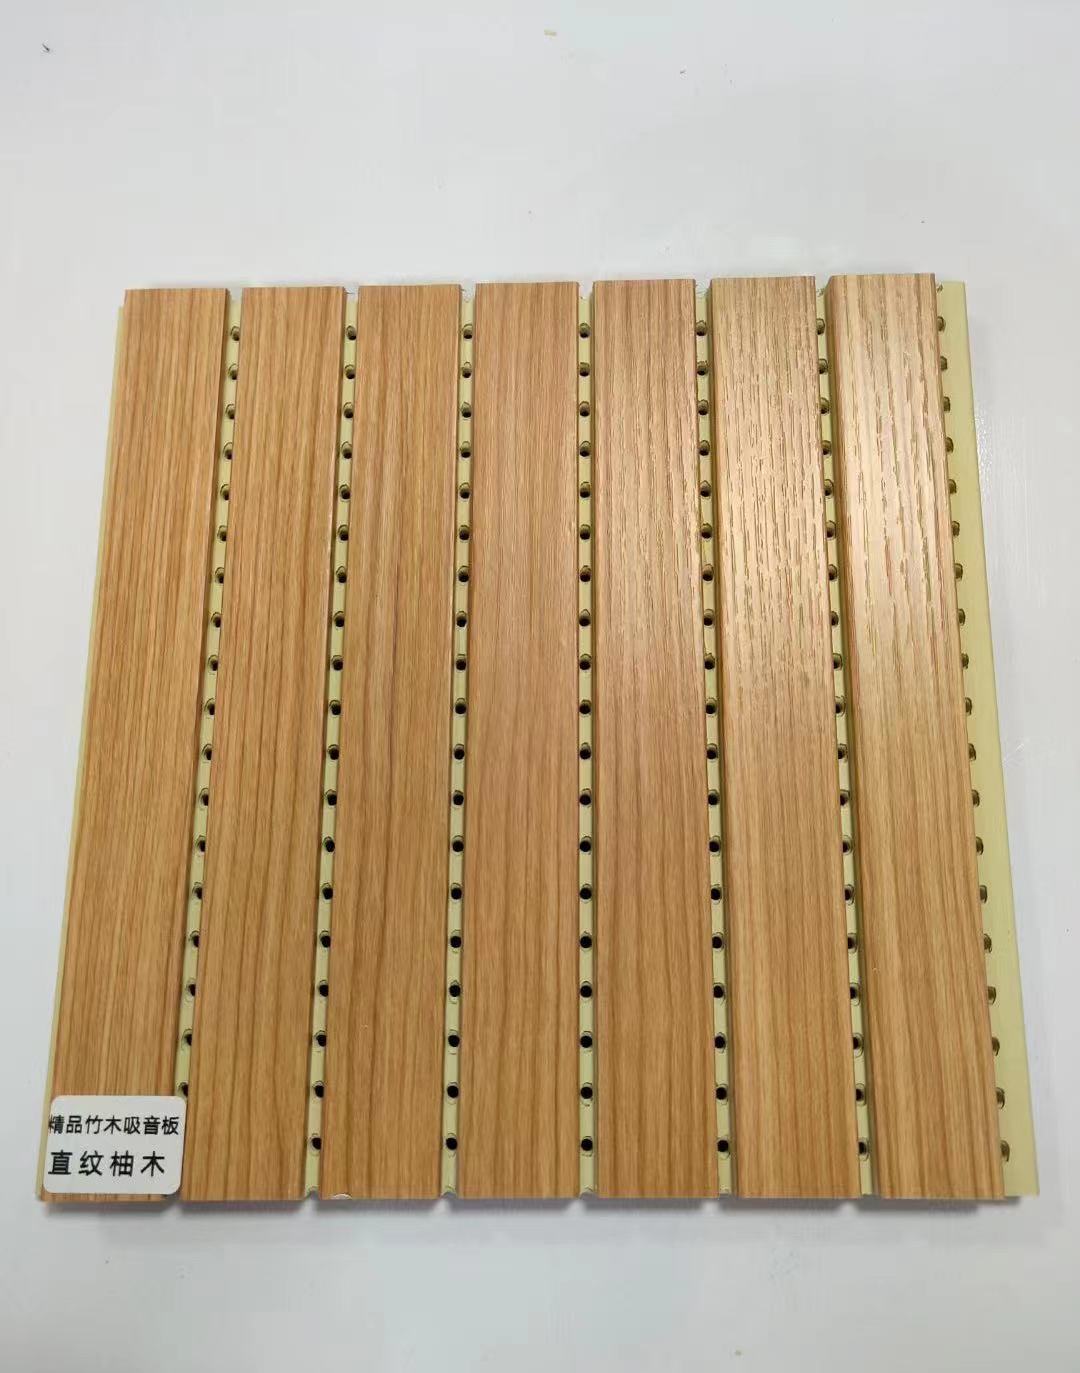 木制吸音板价格_木制吸音板批发_木制吸音板报价_木制吸音板出售-金成林装饰材料